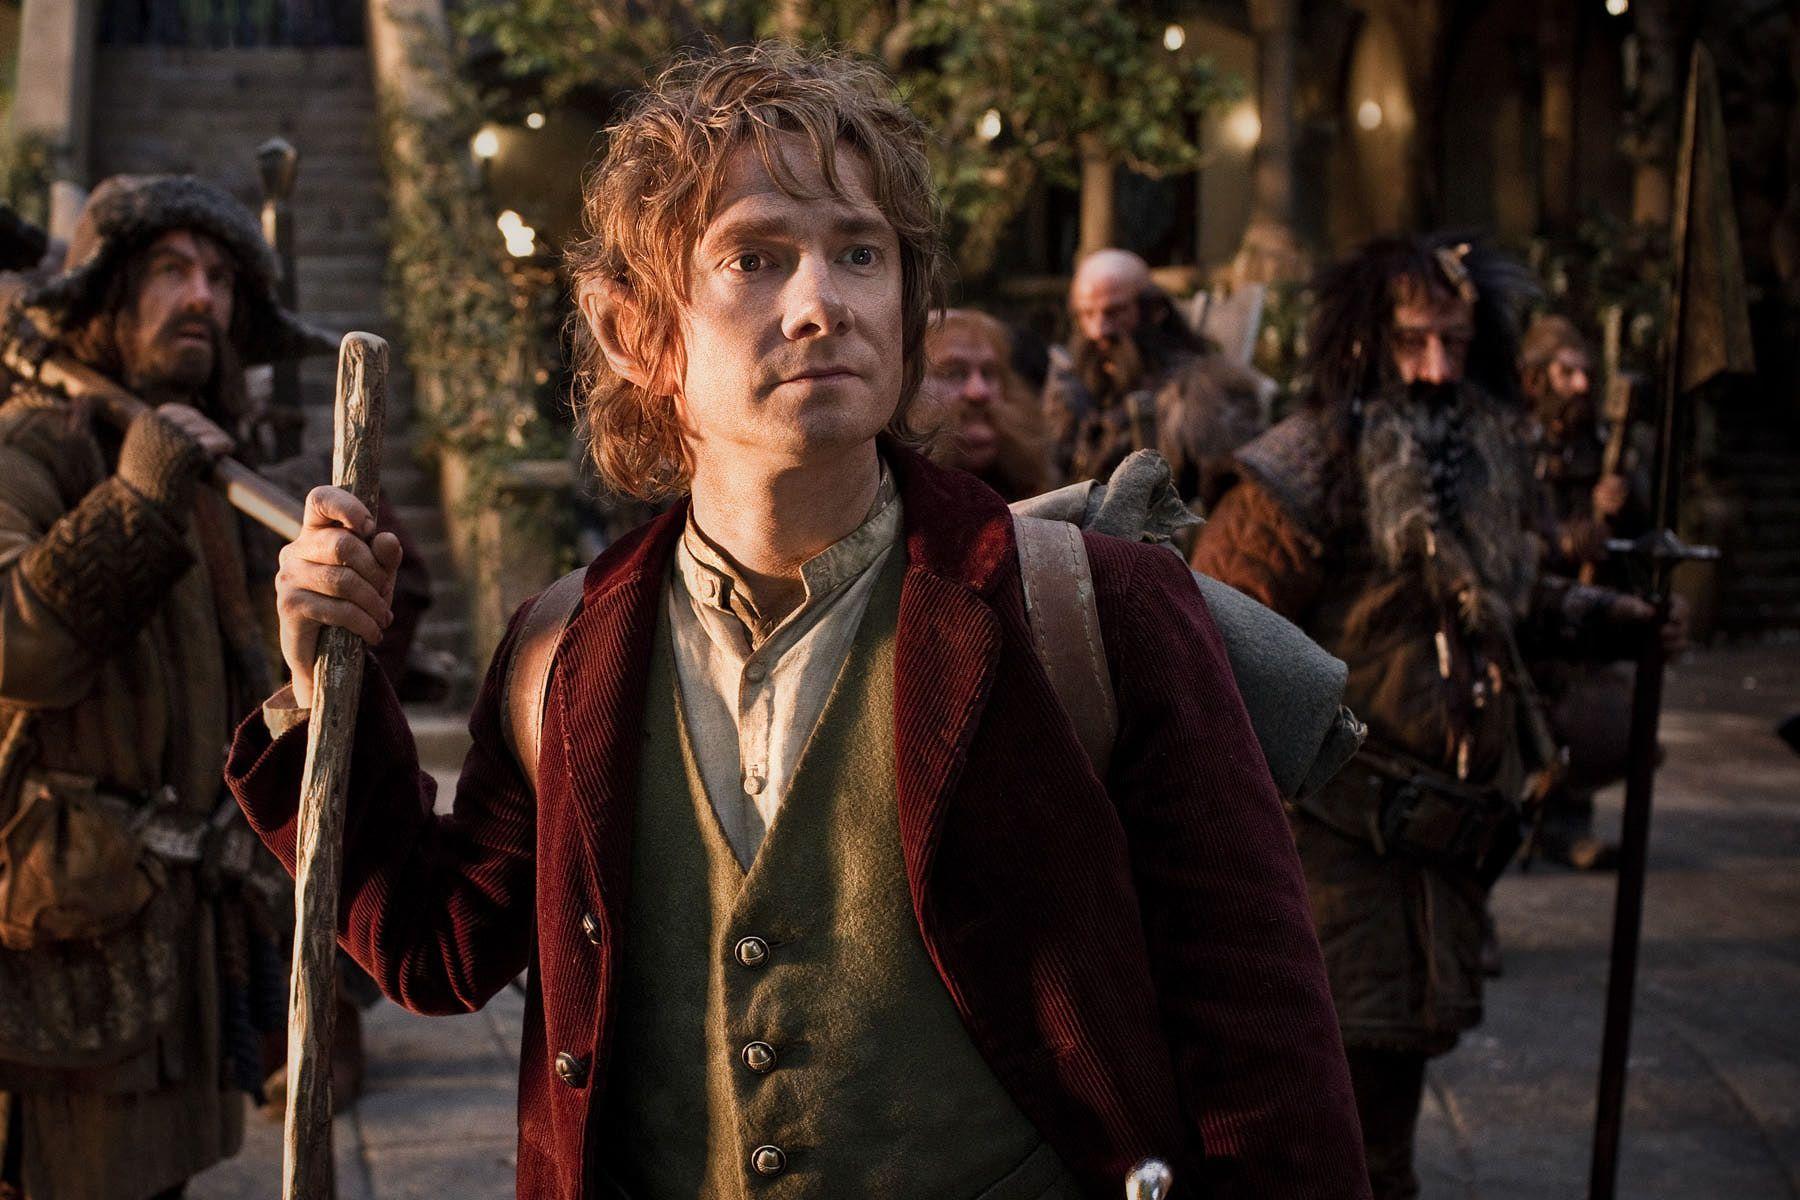 1600x2366px Bilbo Baggins (3970.1 KB).09.2015